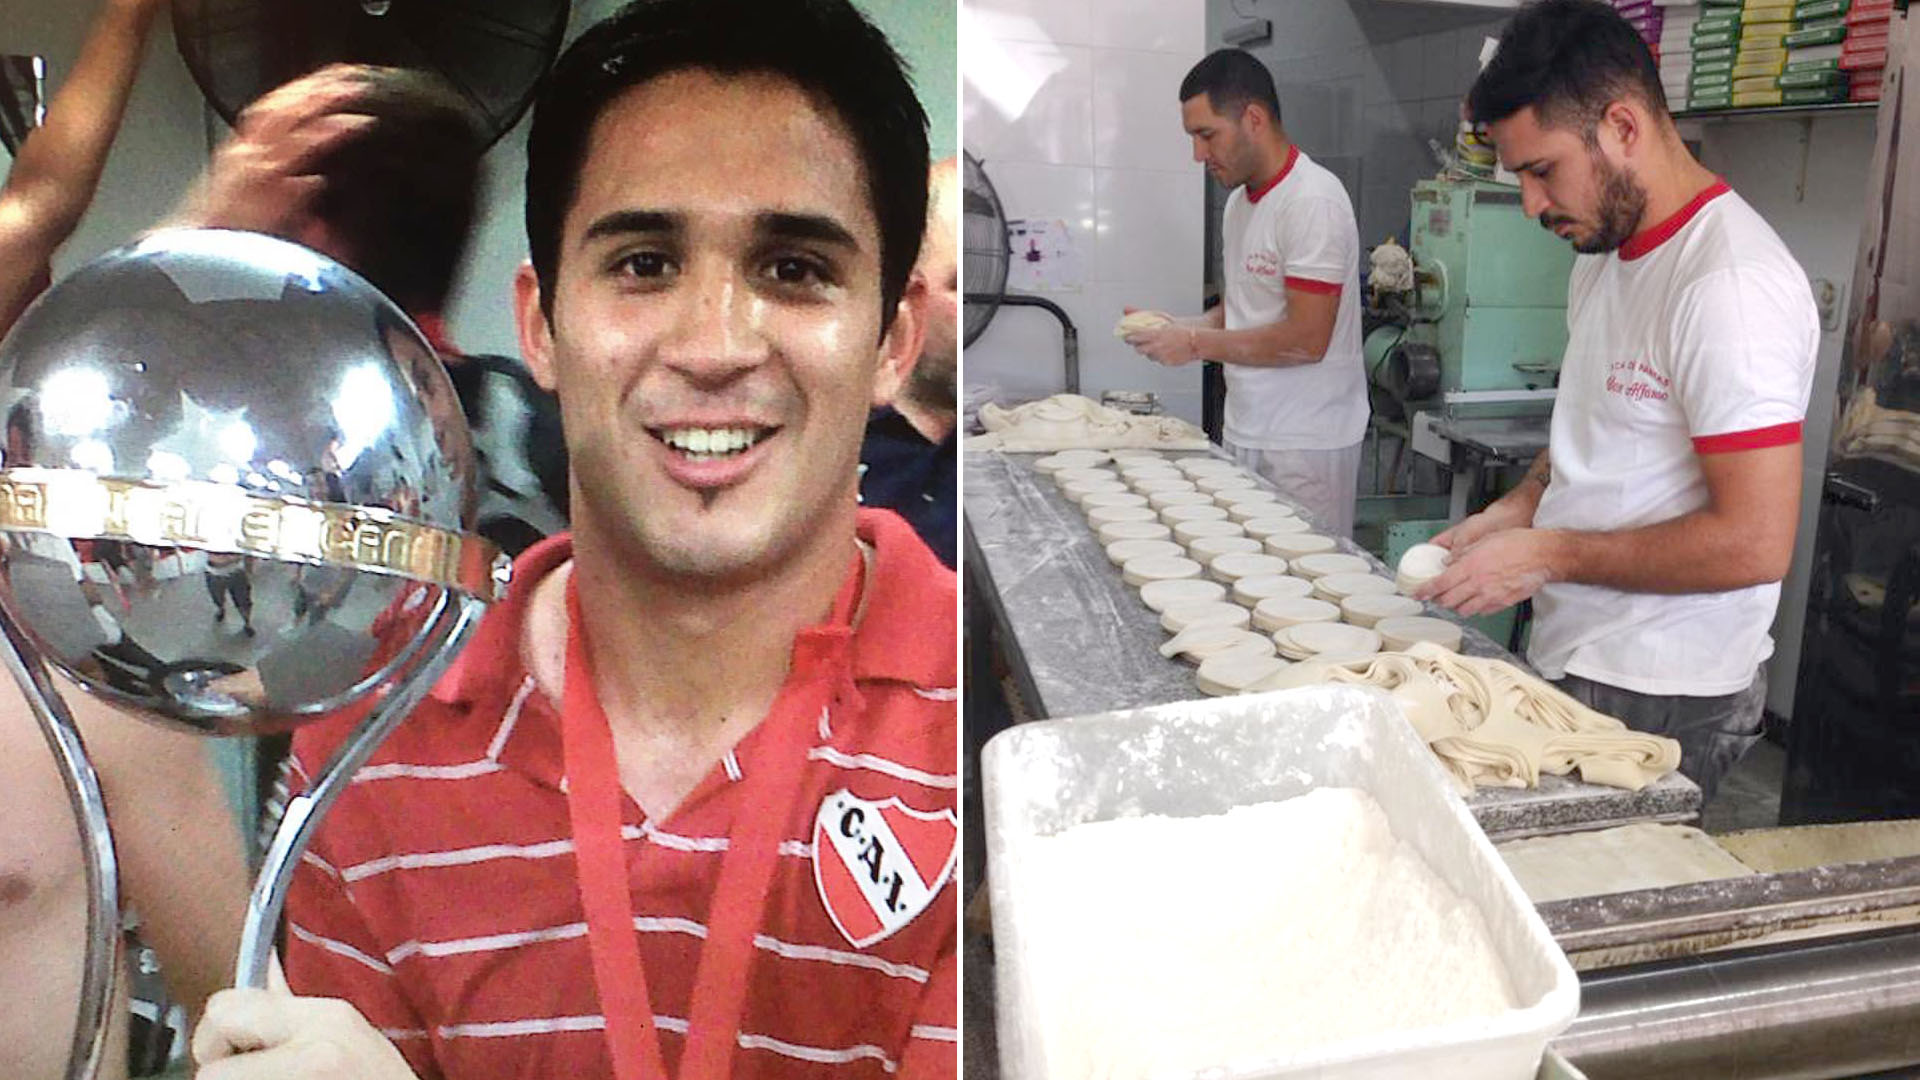 Brian Nieva formó parte del plantel de Independiente campeón de la Sudamericana 2010 y hoy trabaja en la fábrica de pastas familiar